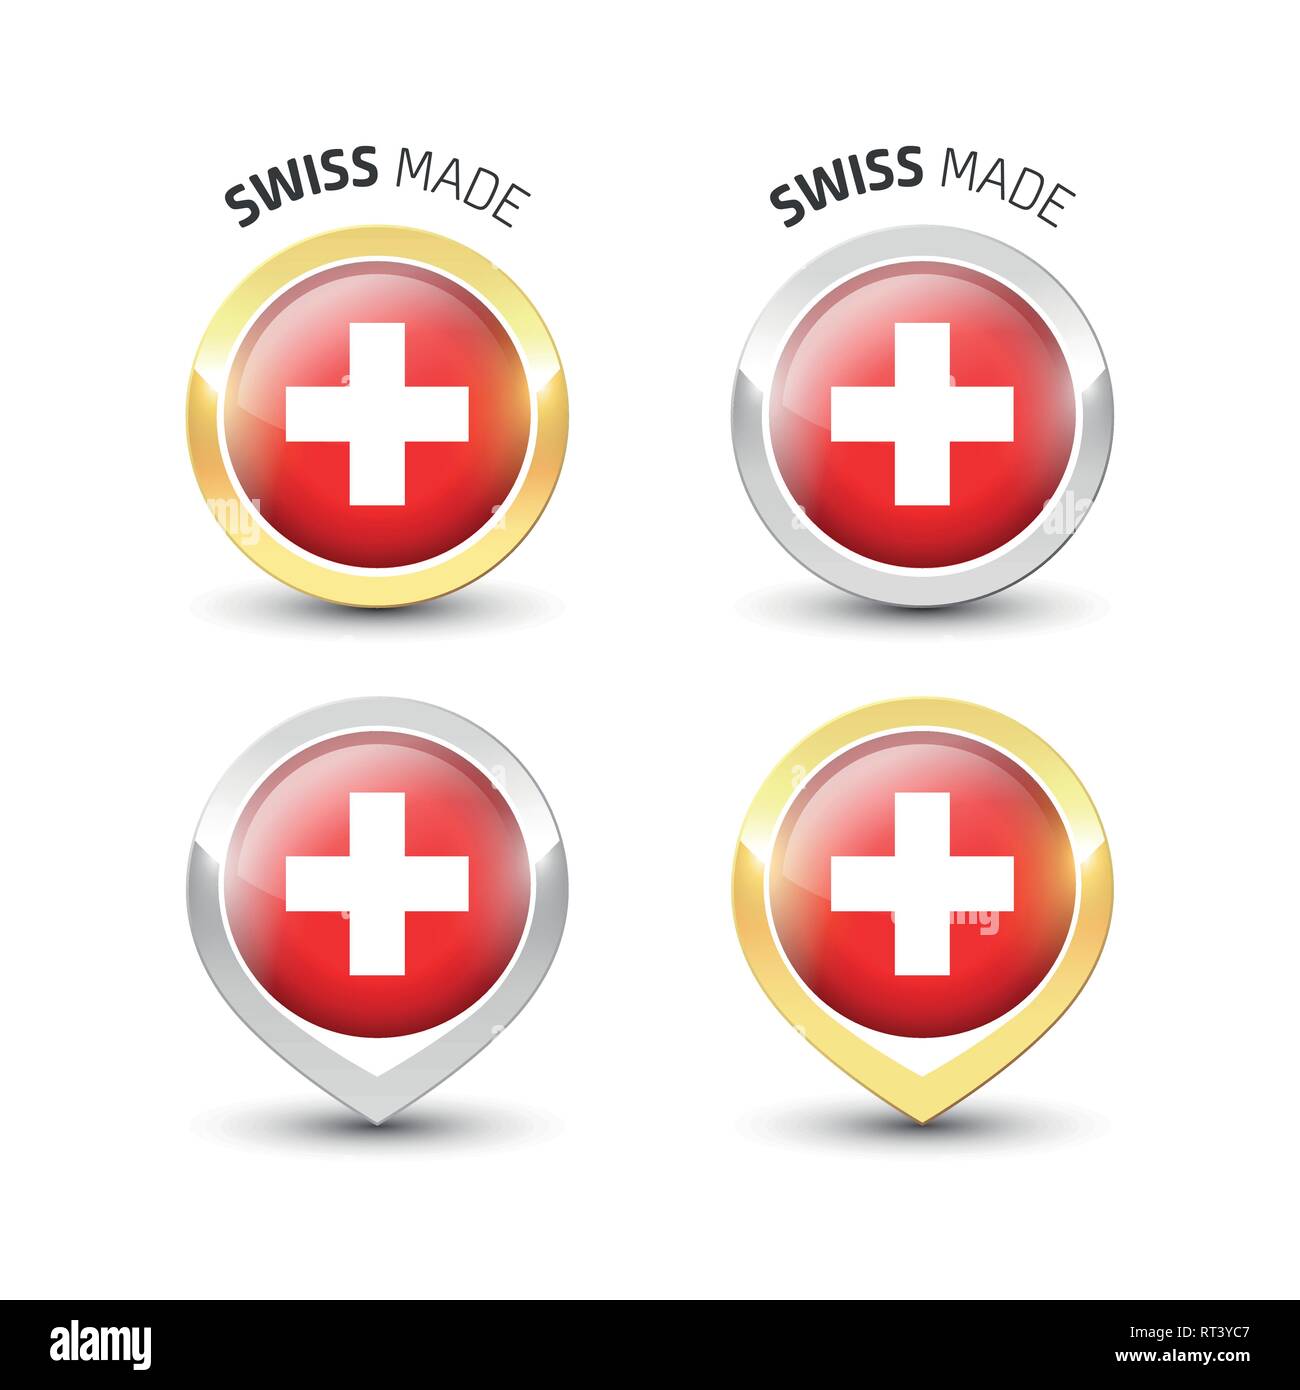 Swiss made - label garanti avec le drapeau de la Suisse l'intérieur de ronde des icônes d'or et d'argent. Illustration de Vecteur